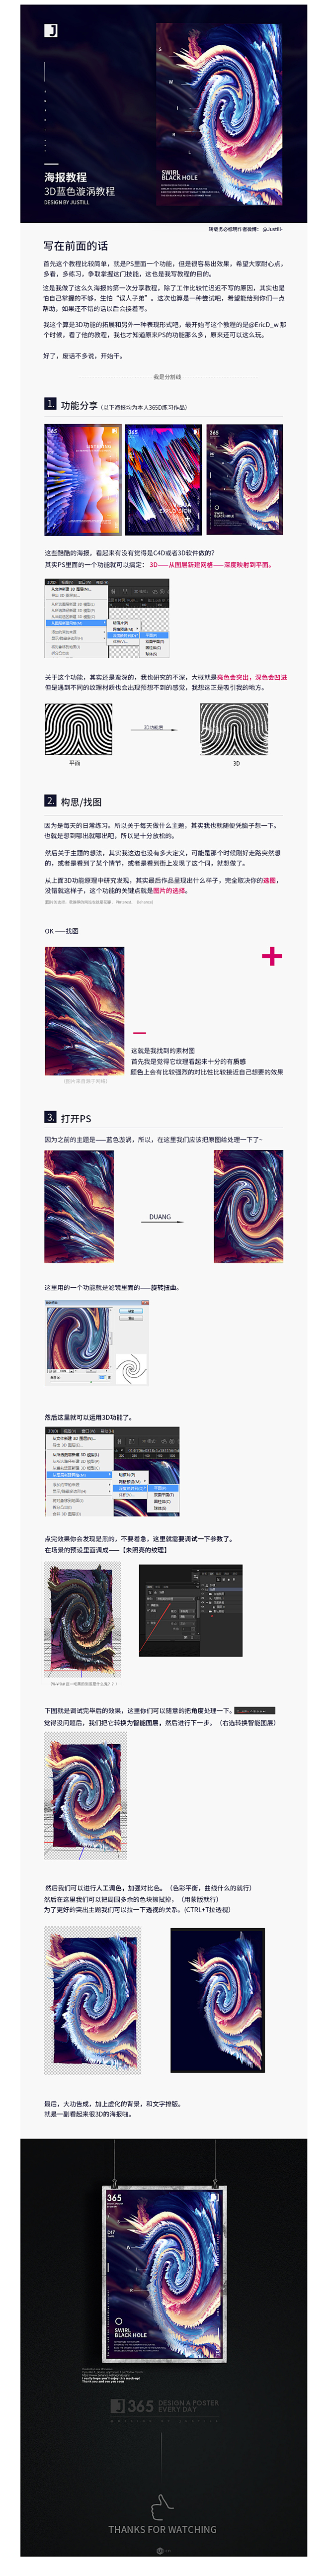 3D蓝色漩涡海报教程-UI中国-专业用户...